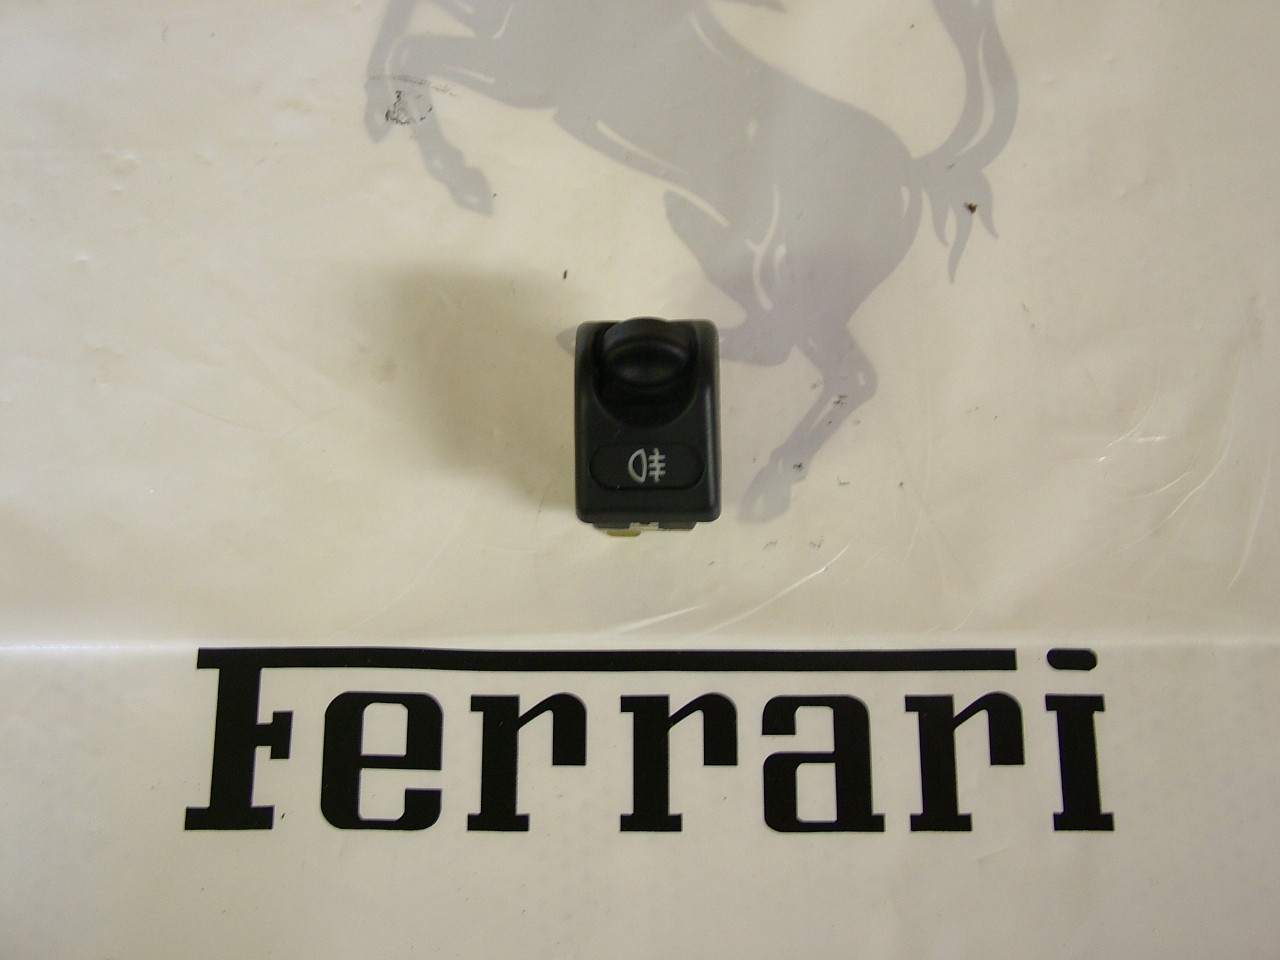 [180712] Ferrari 360 Rear Fog Light Control Switch (Used)